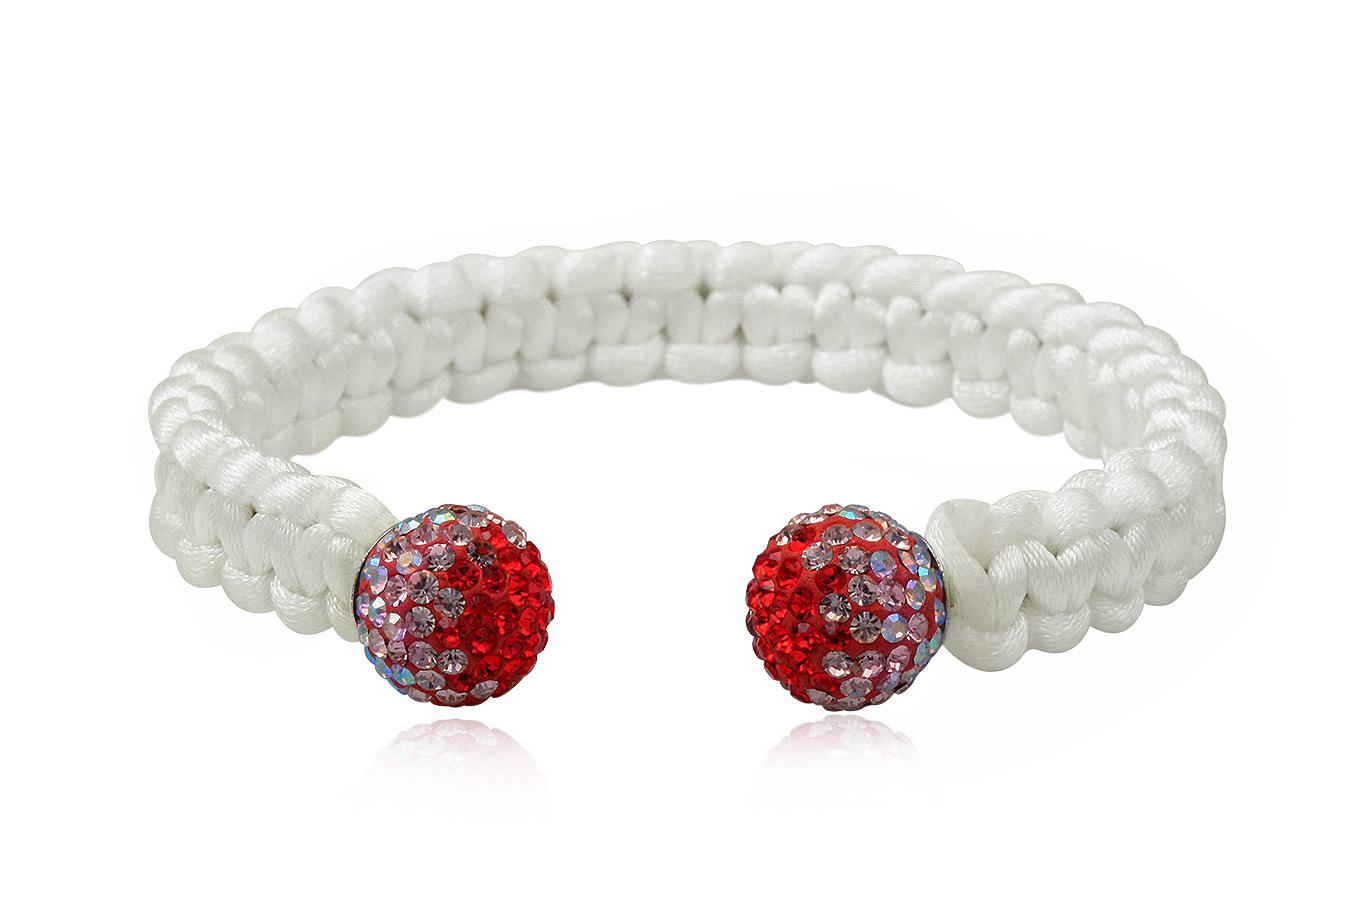 bracelet-jonc-homme-femme-mixte-soie-blanche-argent-925-cristal-preciosa-rouge